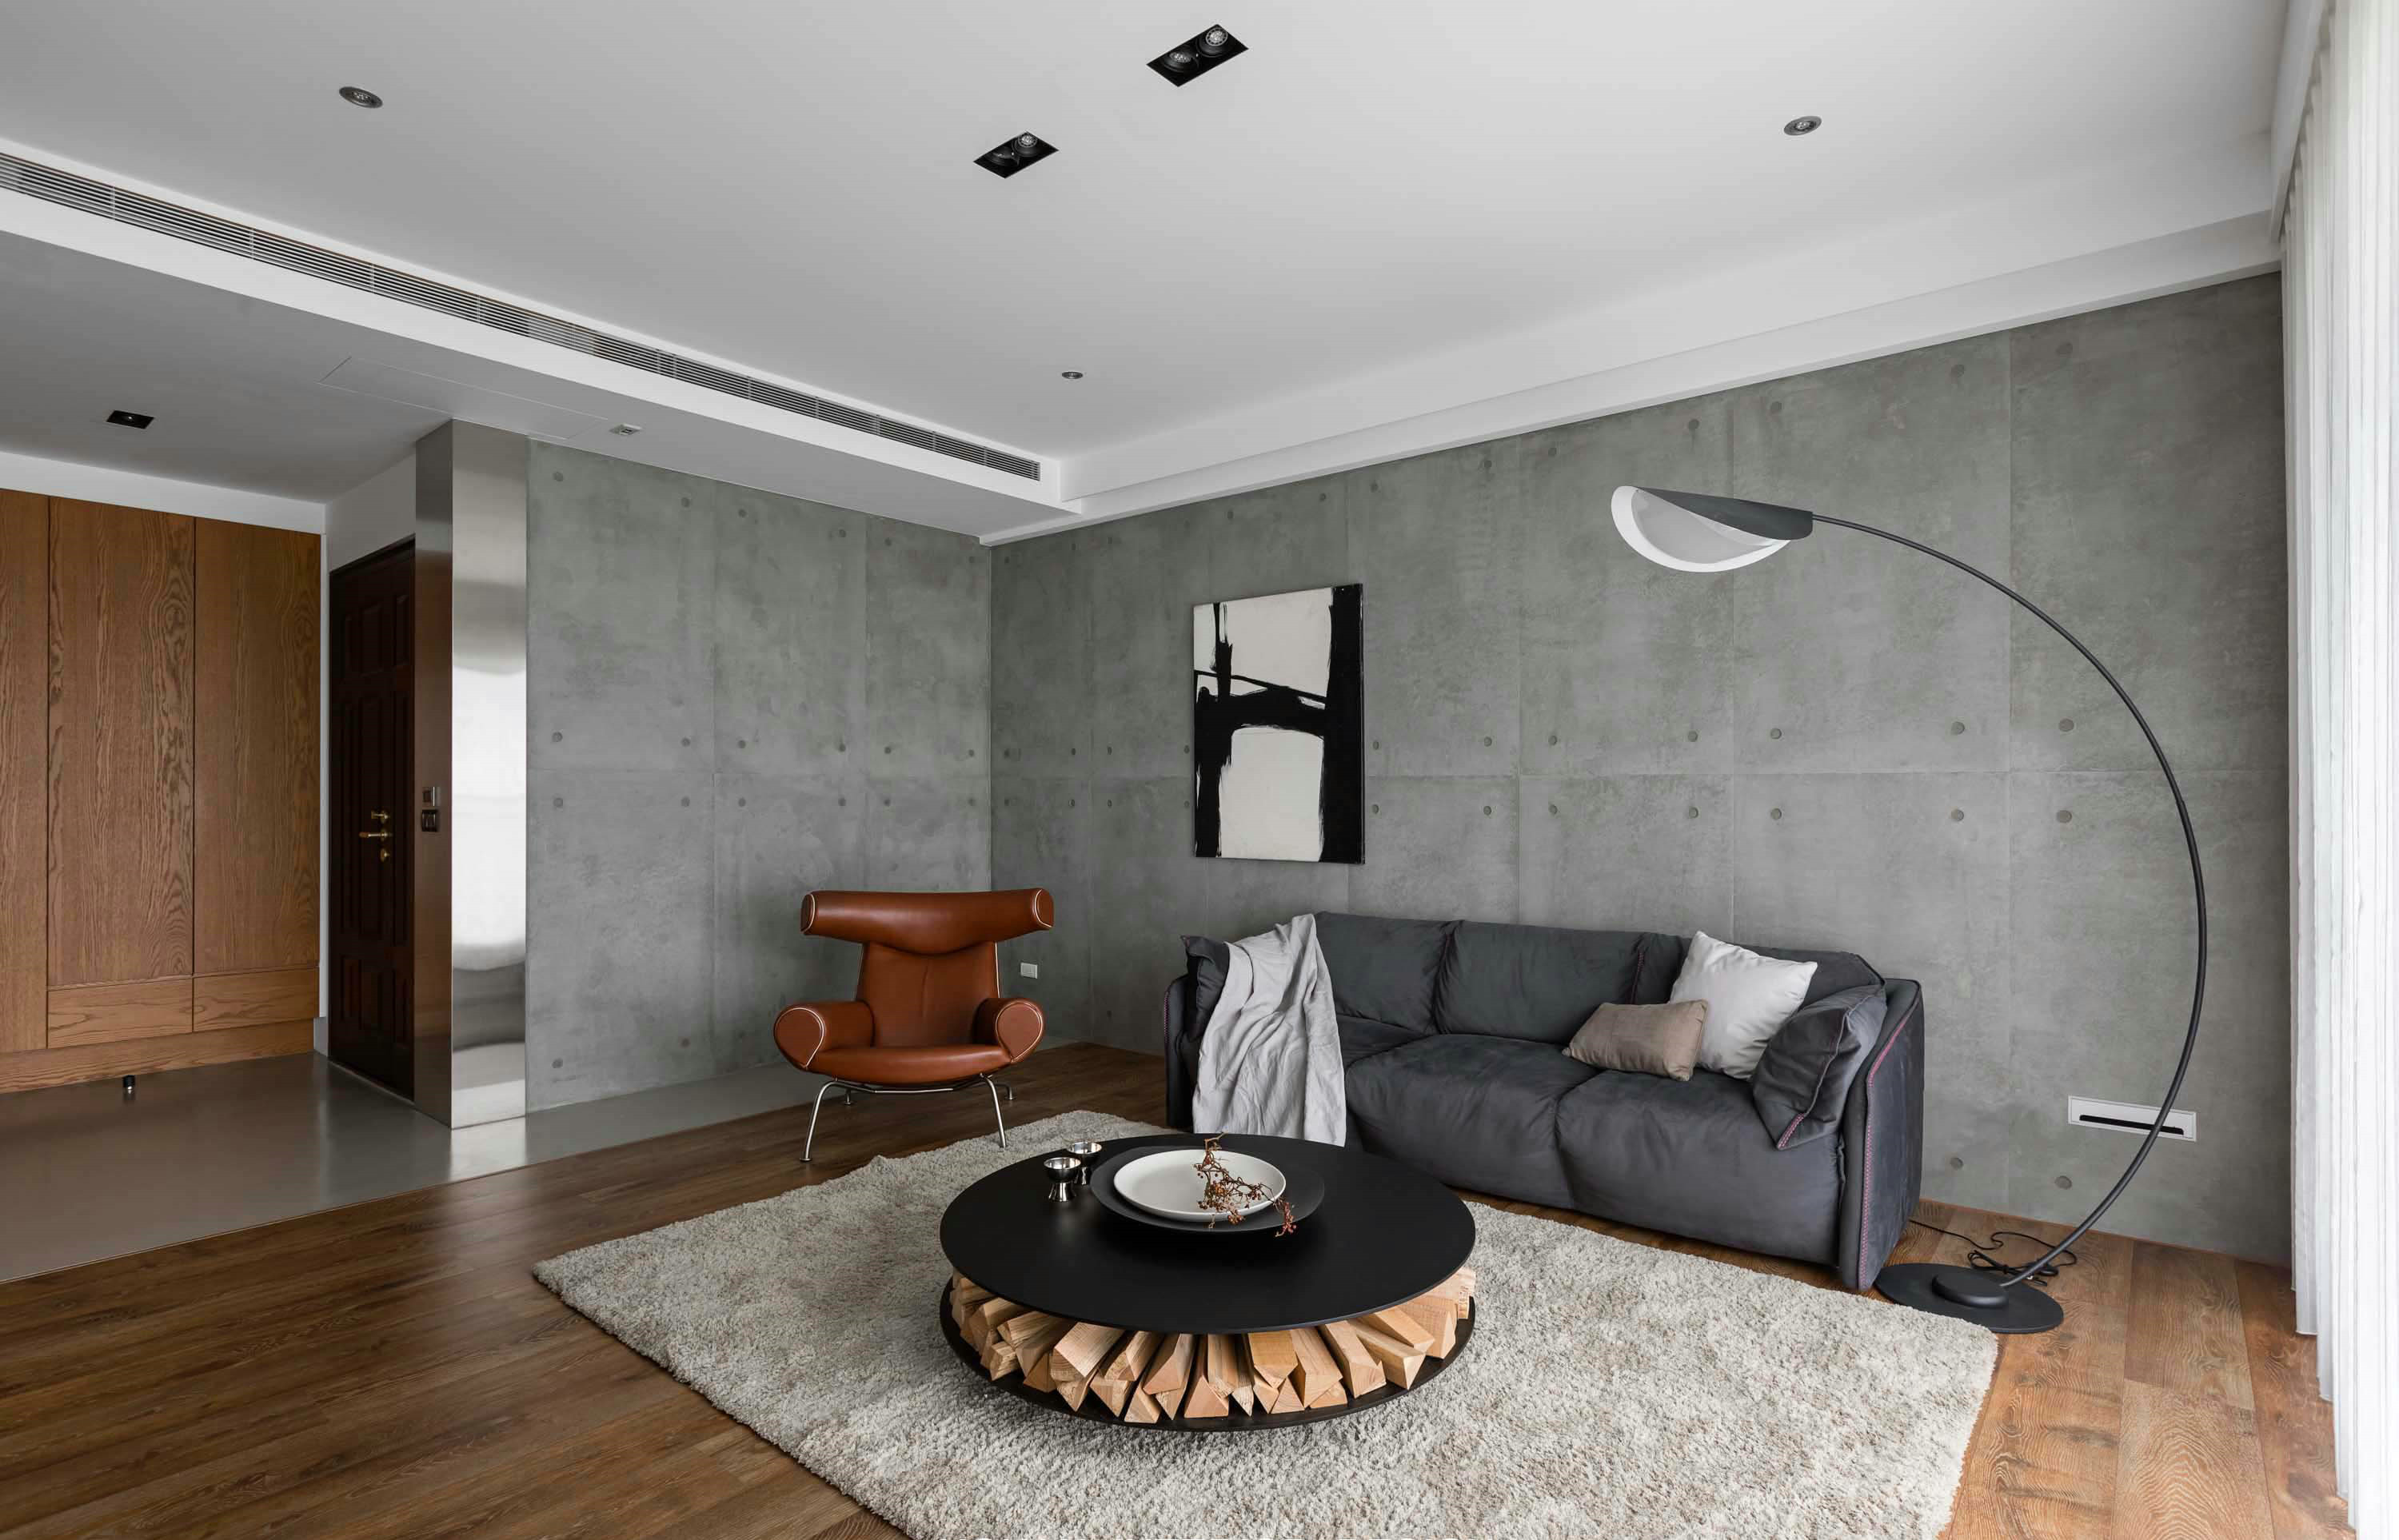 客厅背景墙加入了水泥灰的质感搭配灰色沙发和线形落地灯，空间静谧有大气。